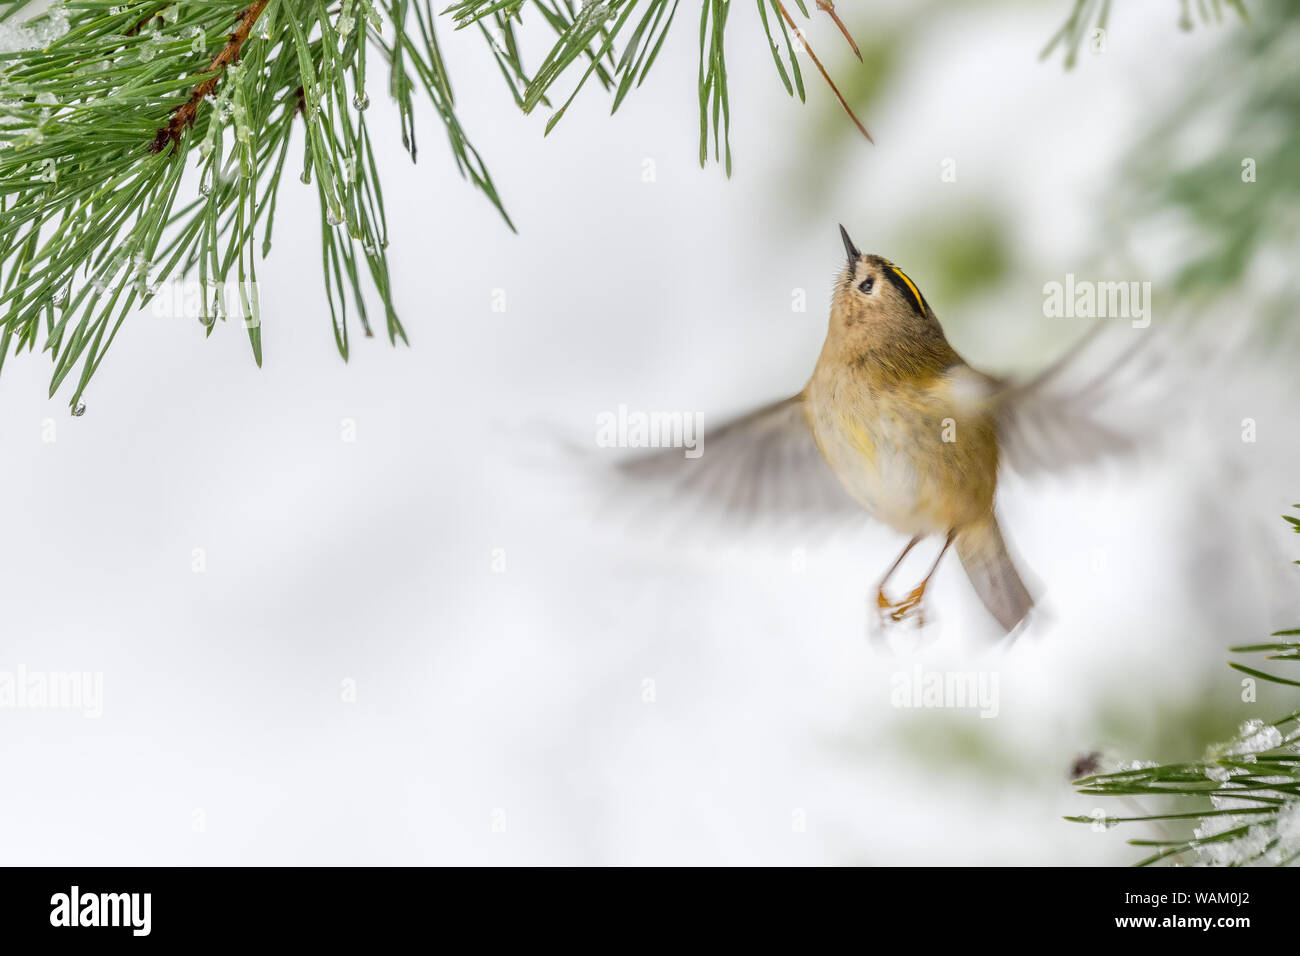 Goldcrest (Regulus regulus) volant sous les aiguilles de pin. Flou de mouvement d'ailes. Scène d'hiver. Pays de Galles, Royaume-Uni. Décembre Banque D'Images